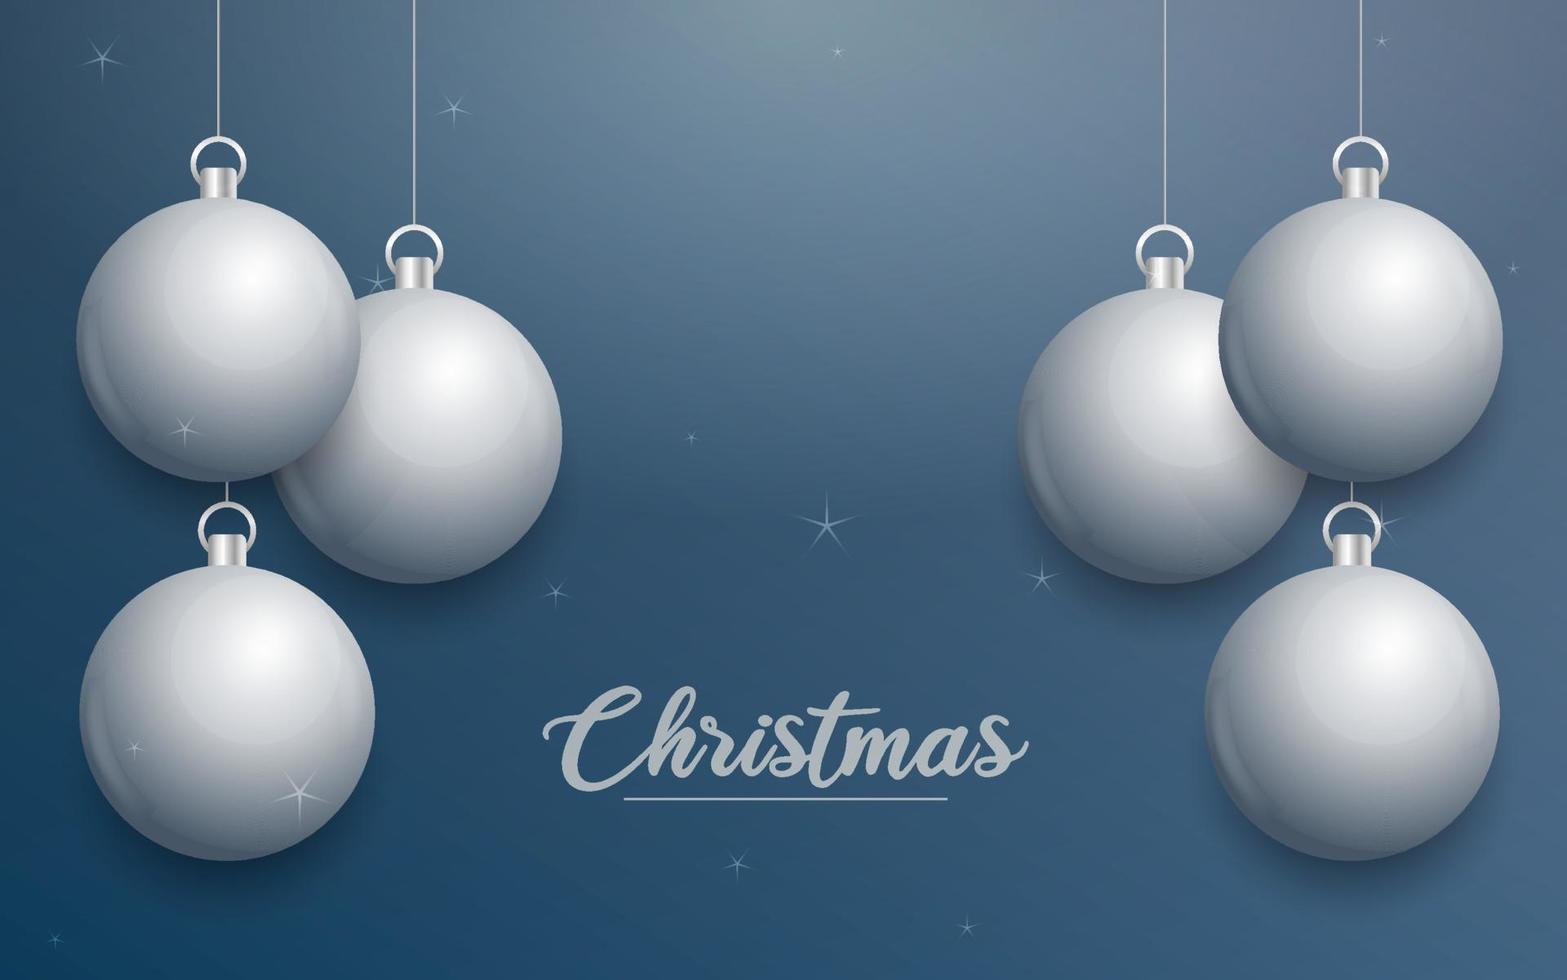 banner de natal de vetor com decorações. texto de feliz natal. enfeites de prata no fundo azul